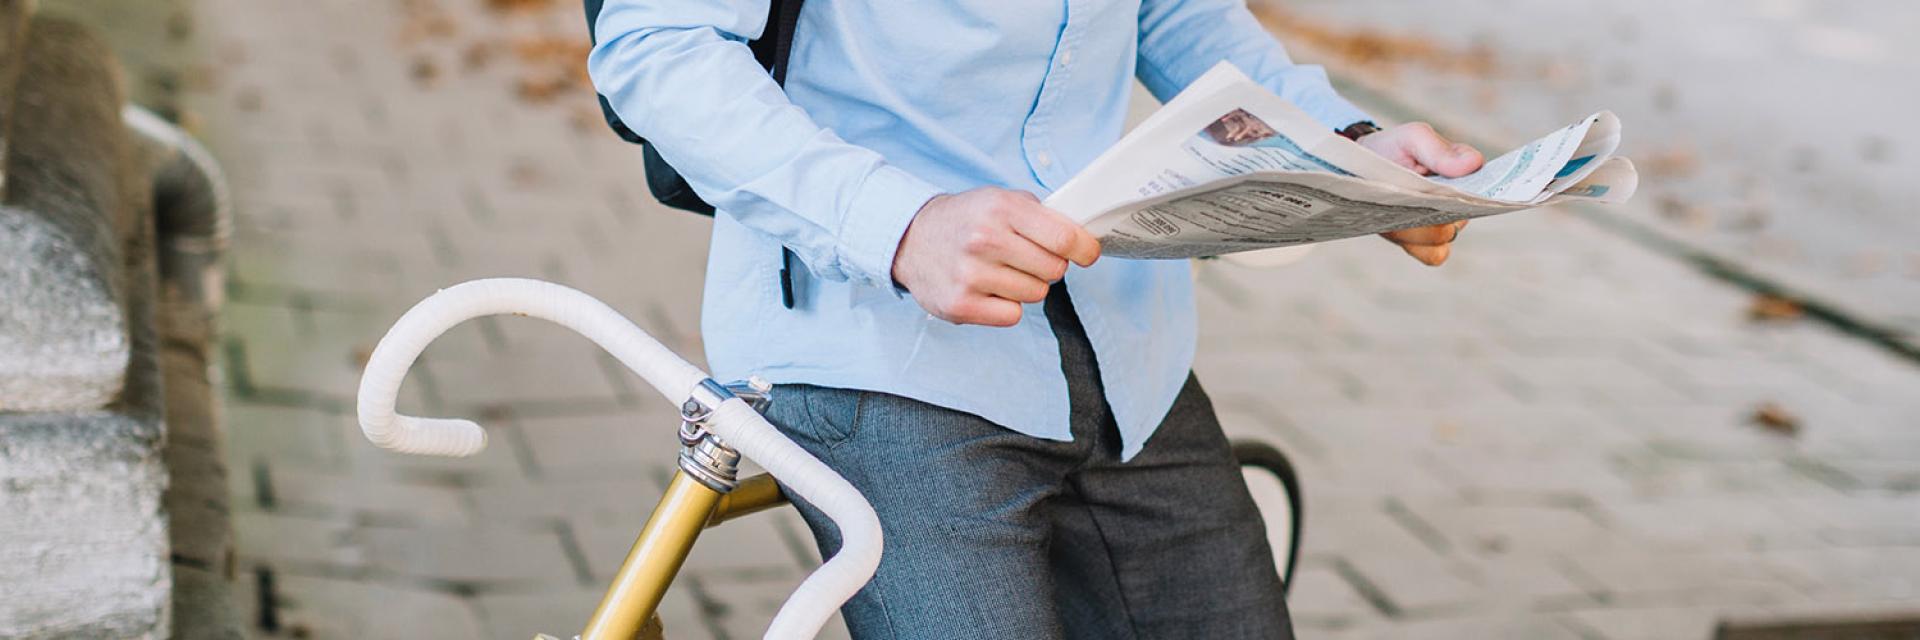 ragazzo che legge notizie in bici